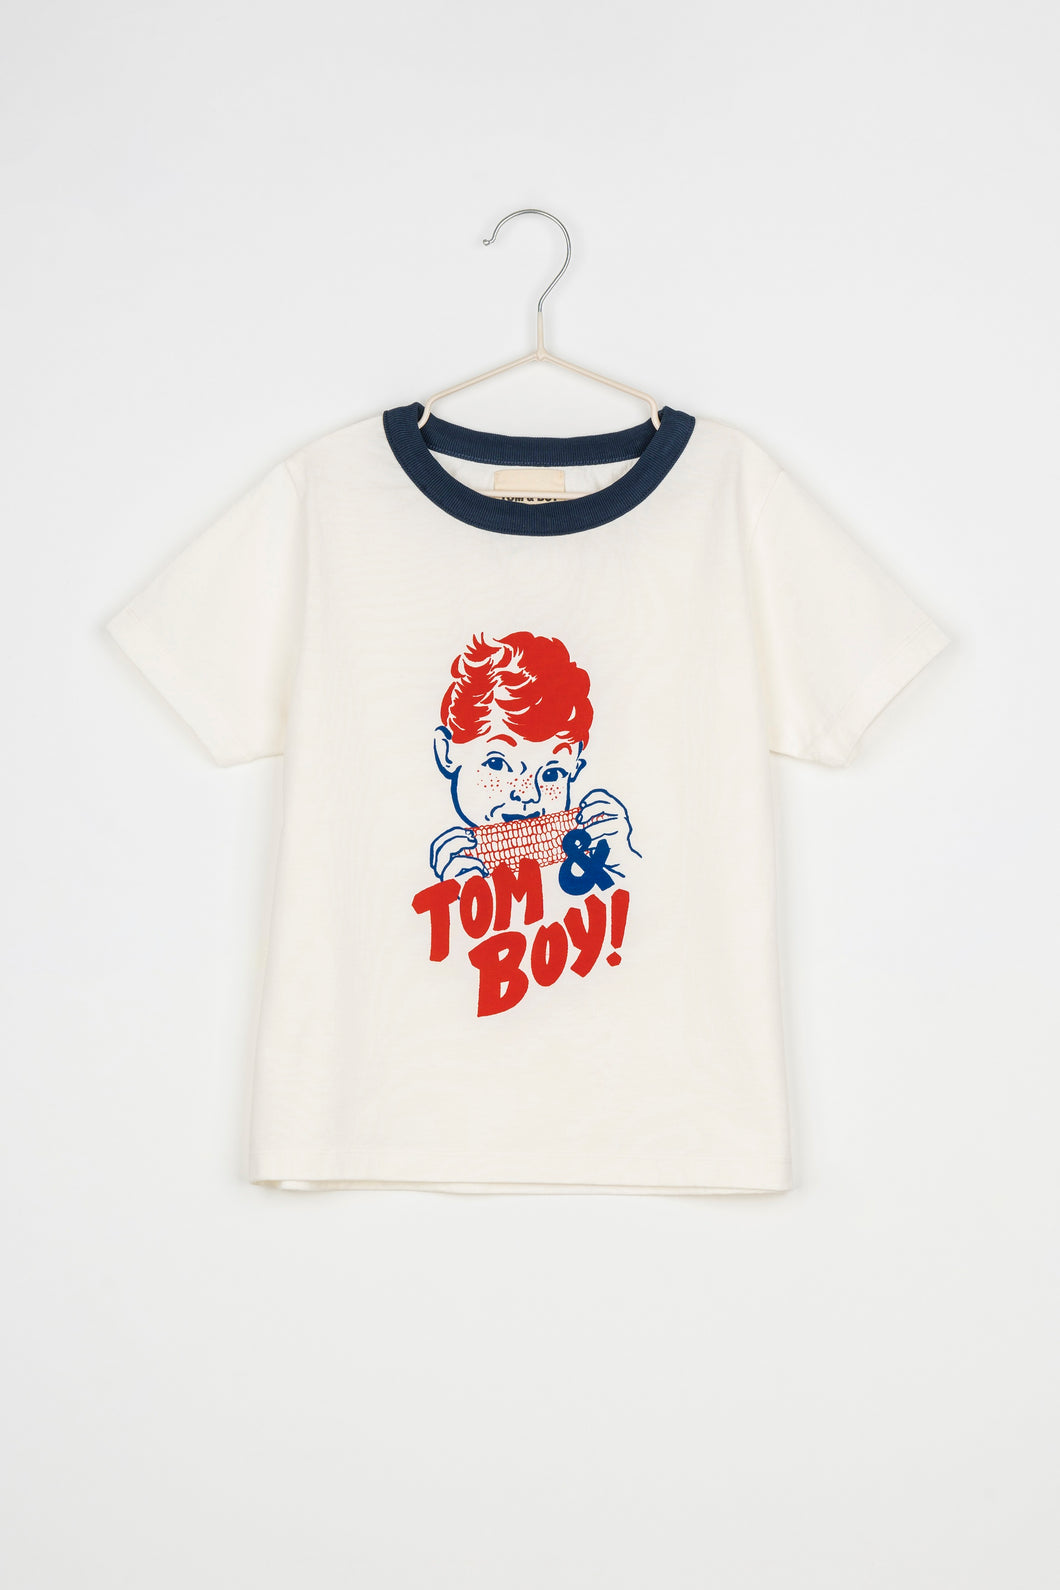 Tom & Boy / T-Shirt / Boy